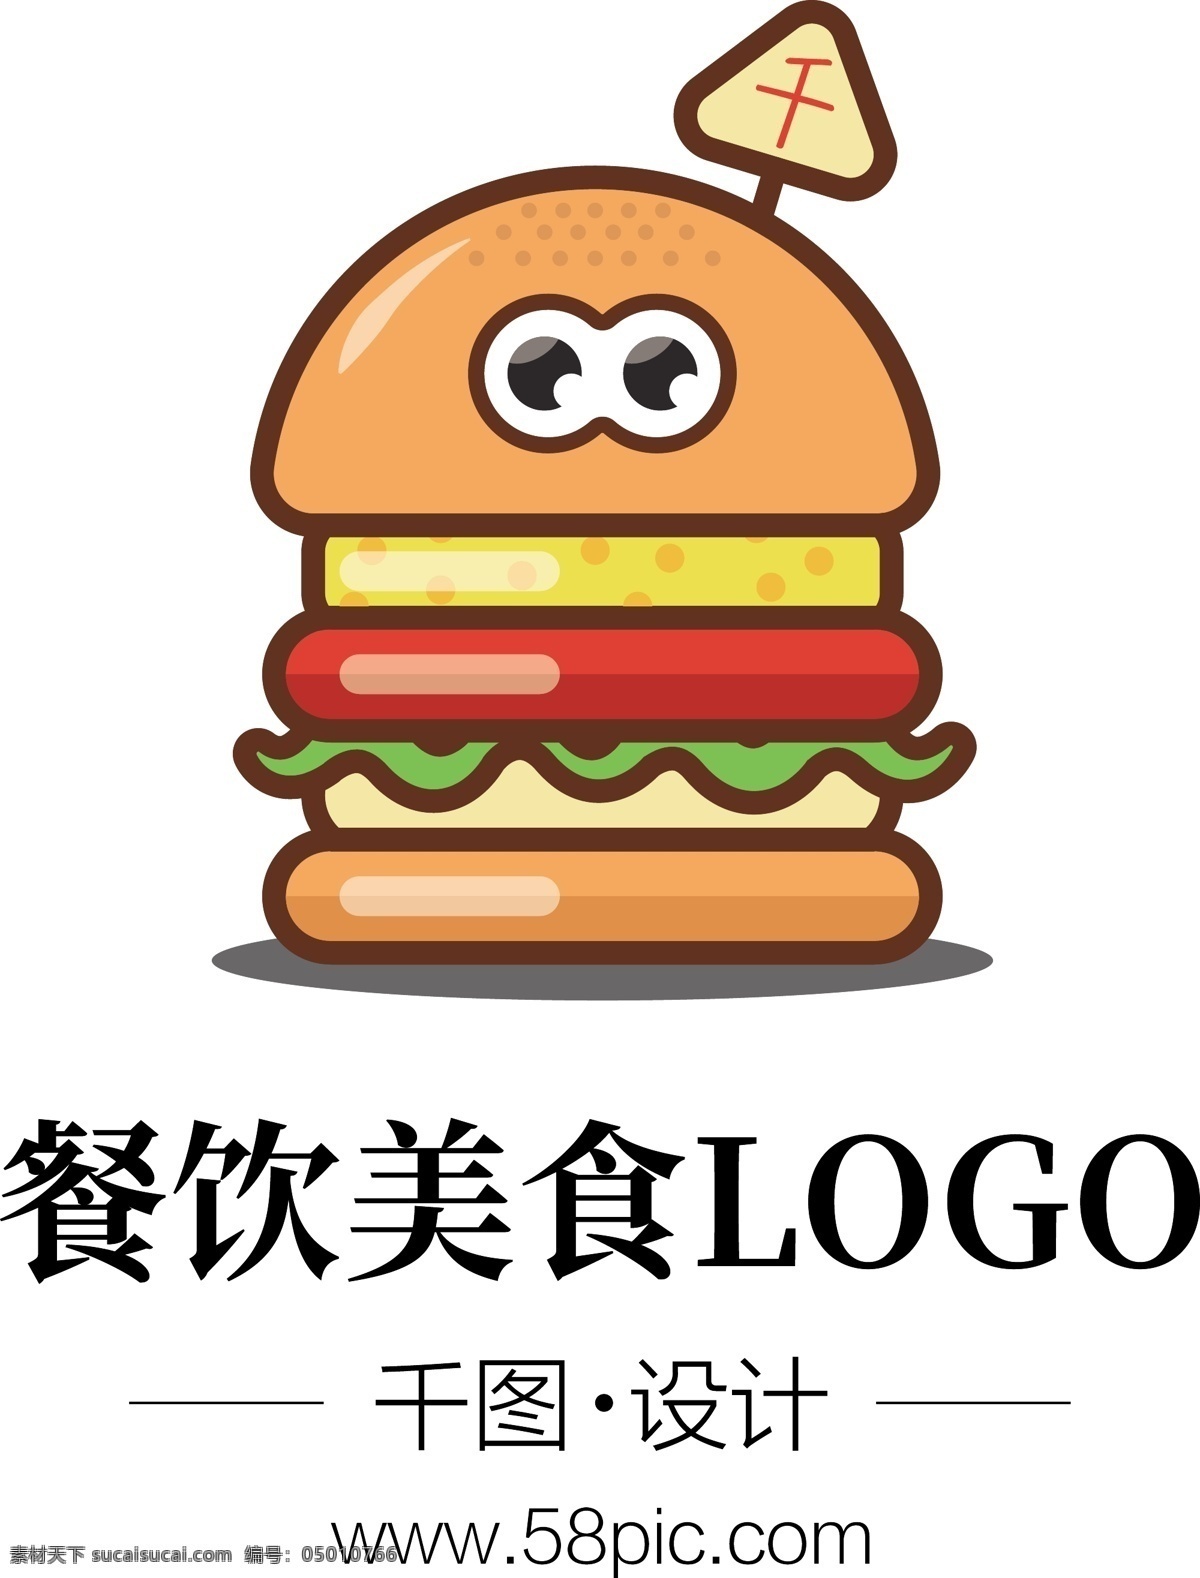 扁平化 美食 餐饮 快餐 logo 卡通 汉堡 元素 可爱 汉堡元素 店